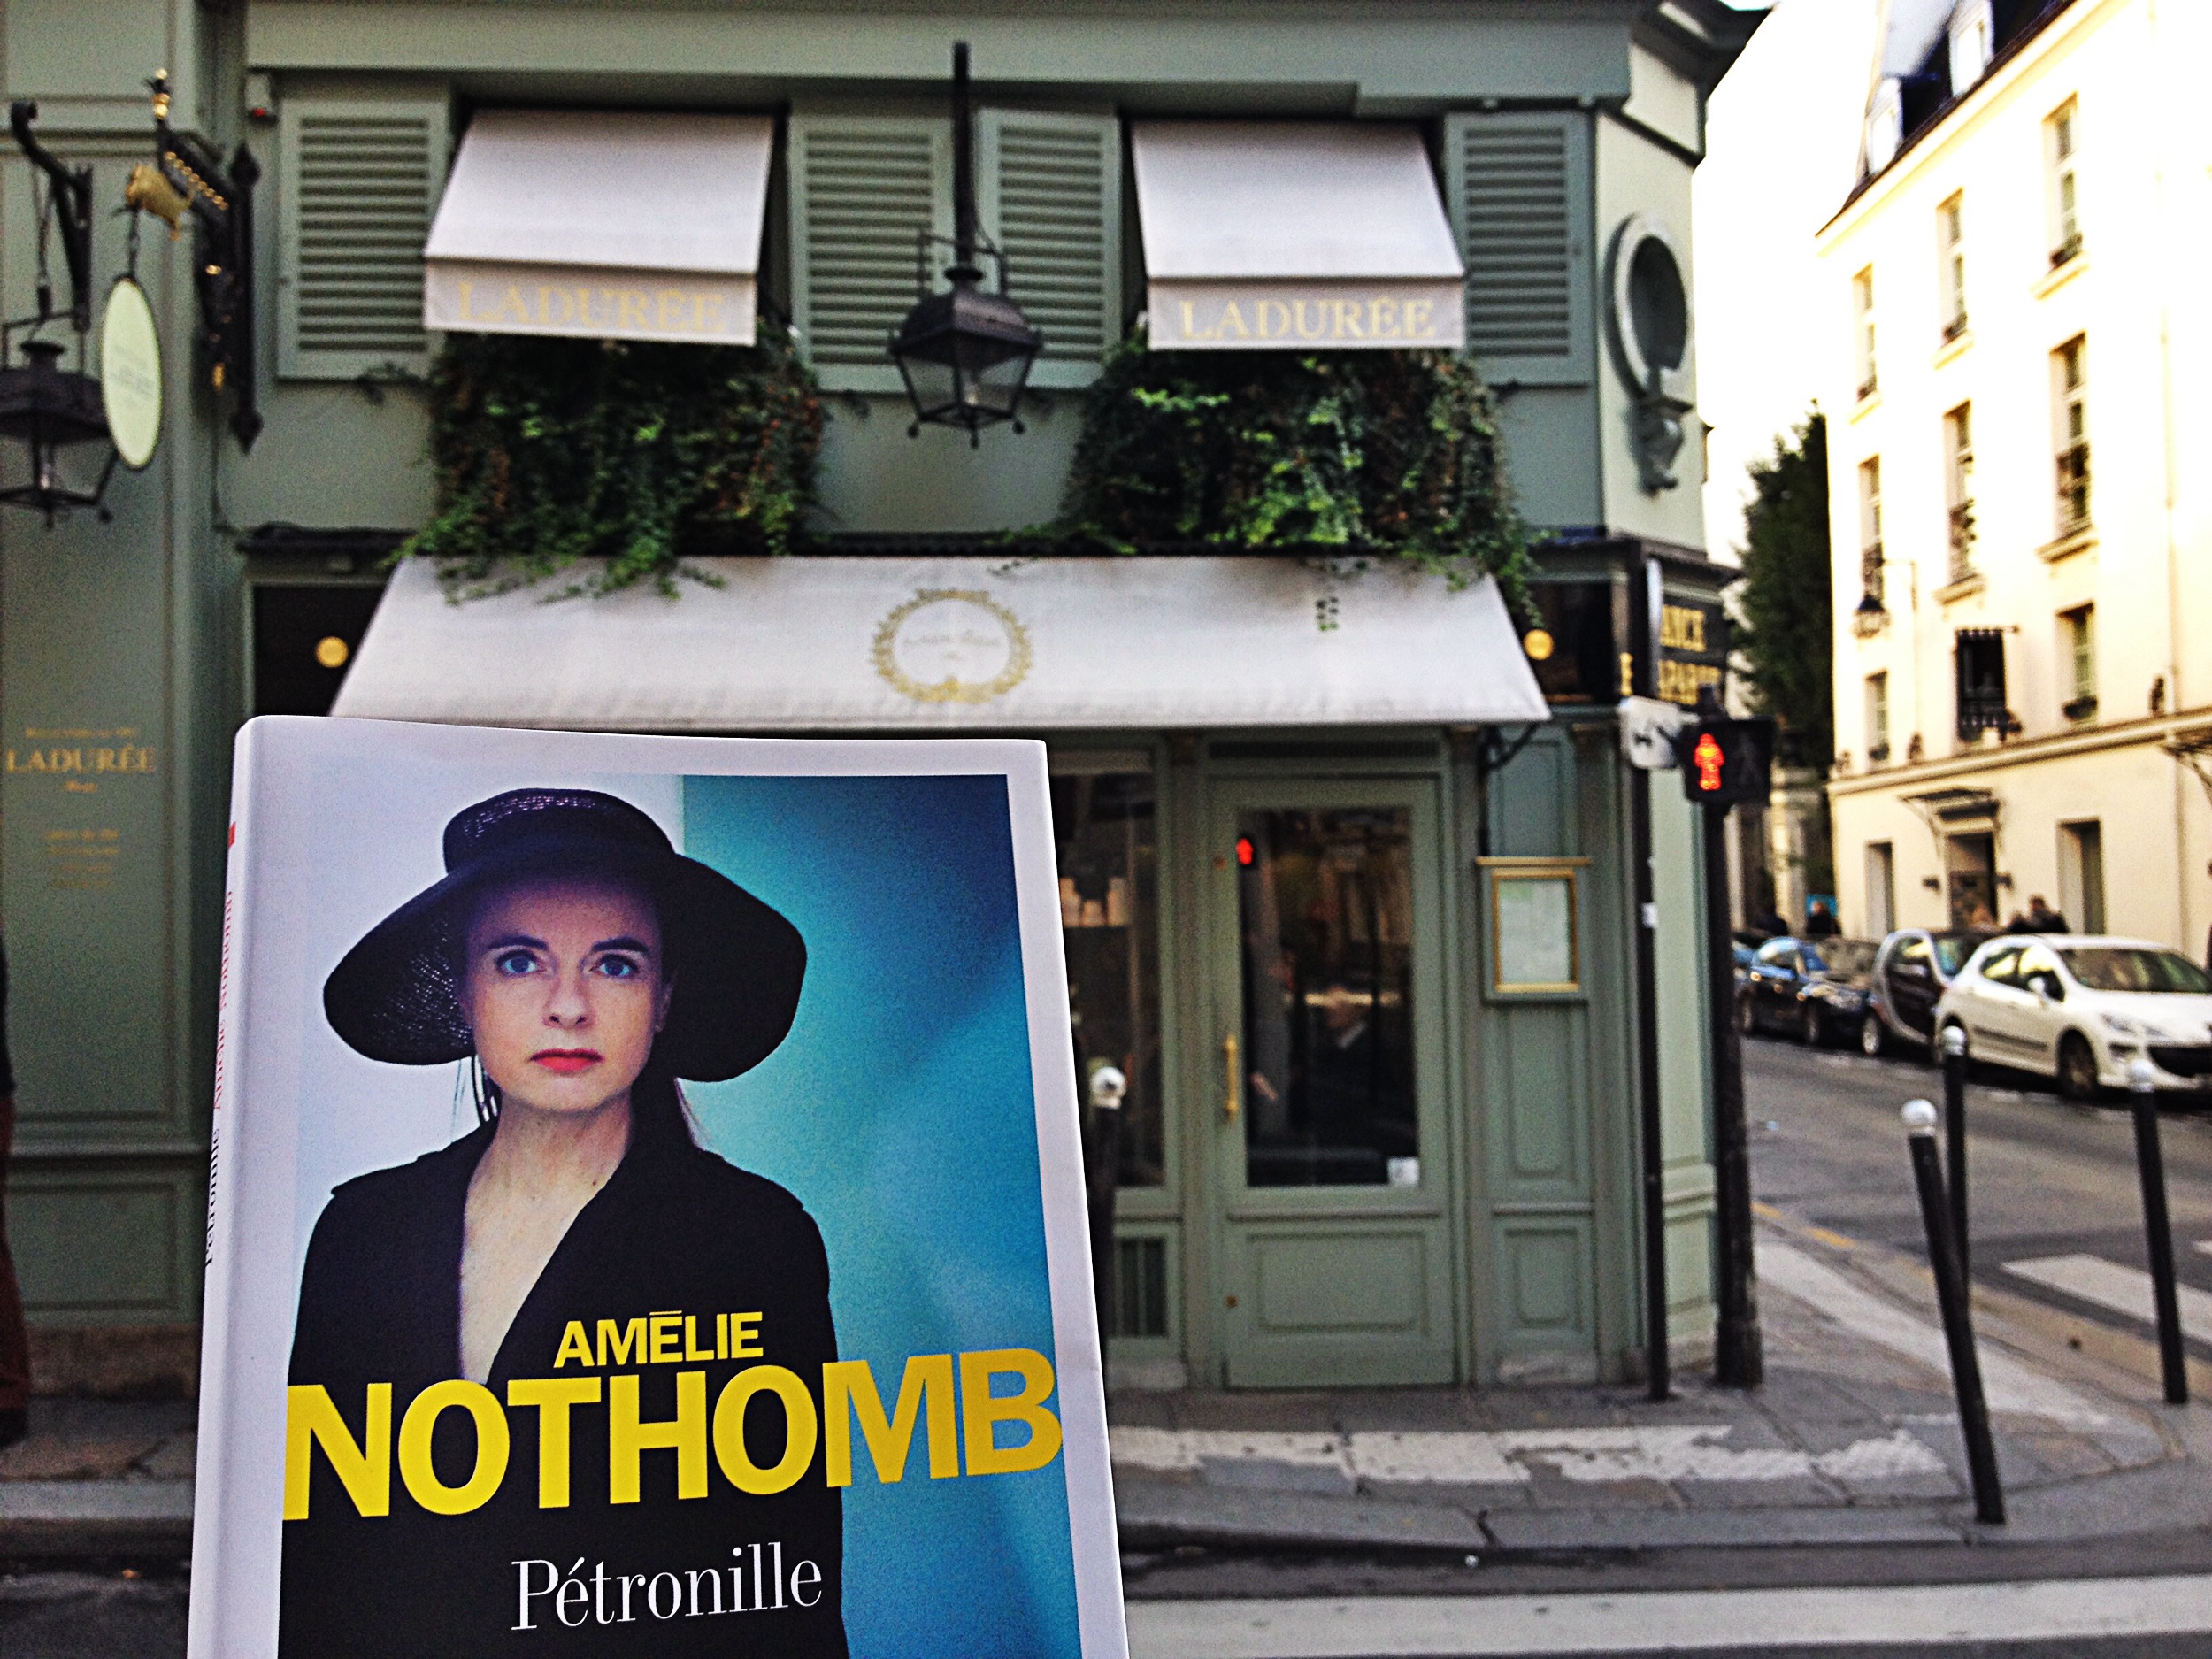 Amélie Nothomb nouveau roman Pétronille rencontre dédicace Ladurée anniversaire Fnac 60 ans photo by United States of Paris blog